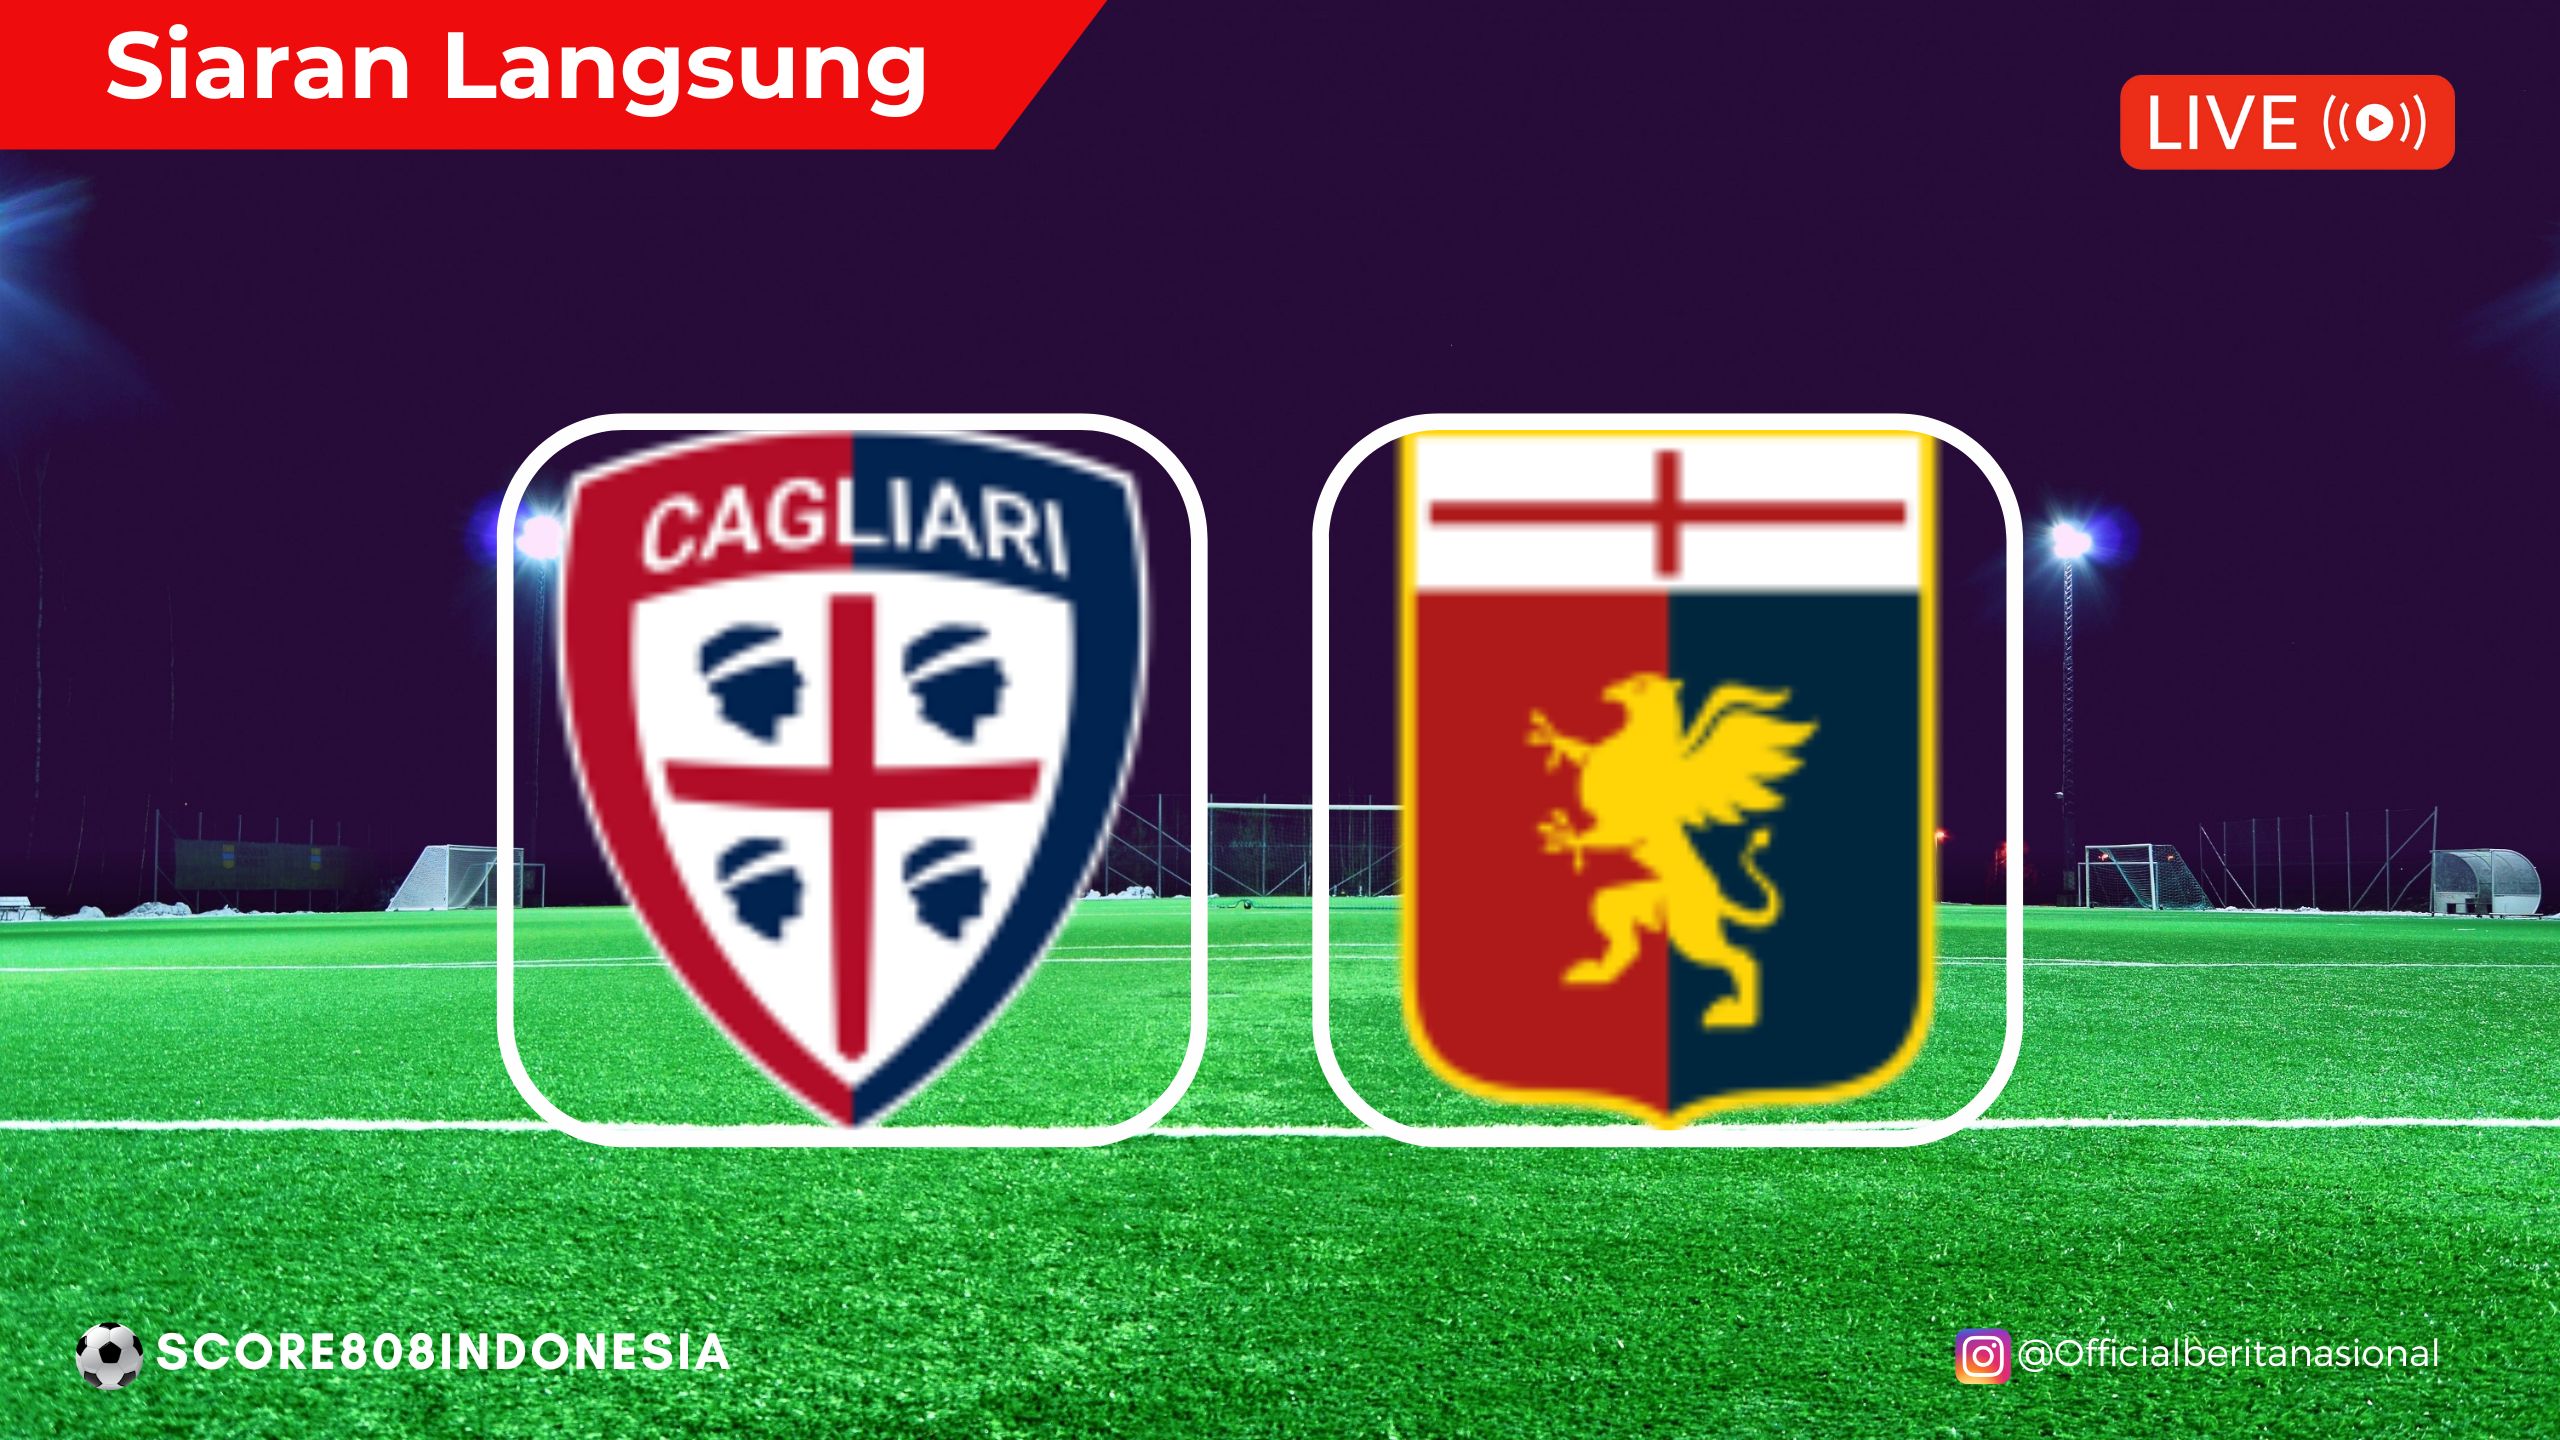 Cagliari VS Genoa